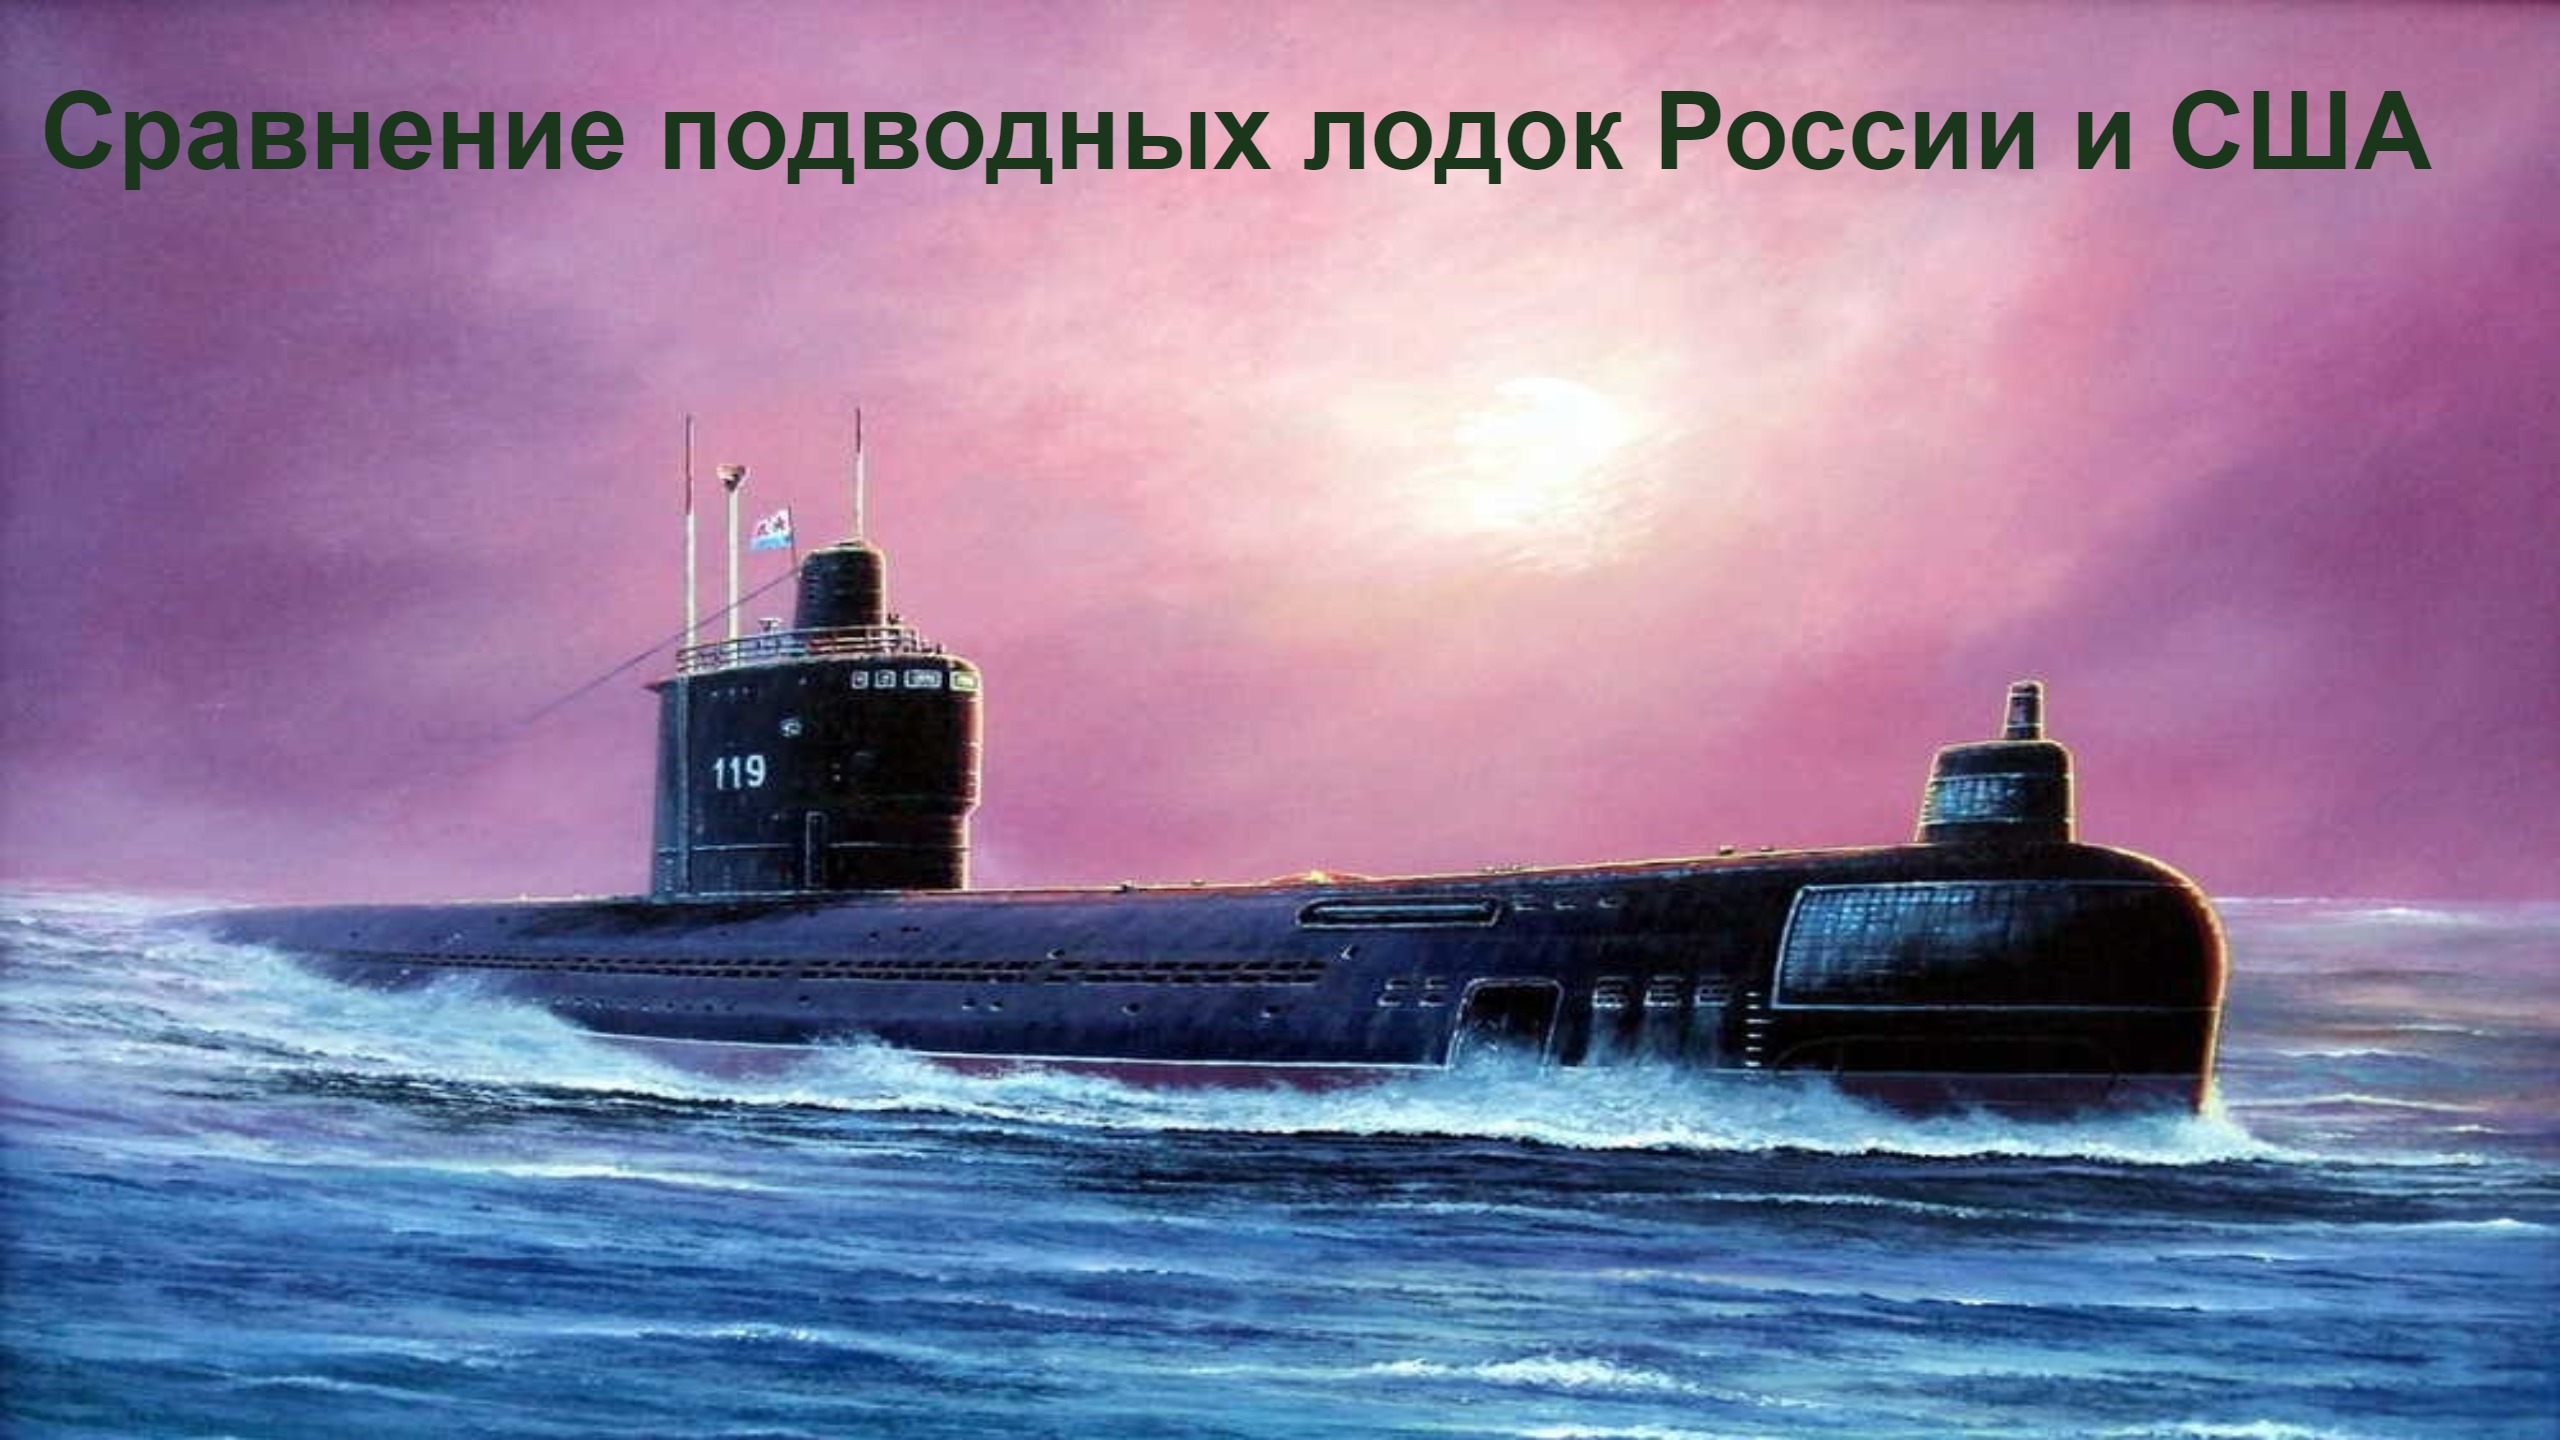 Мировой подводный флот. Подводные лодки проекта 667бдрм «Дельфин». Атомная подводная лодка СССР. Проект 633 подводная лодка. АПЛ Тула подводная лодка.